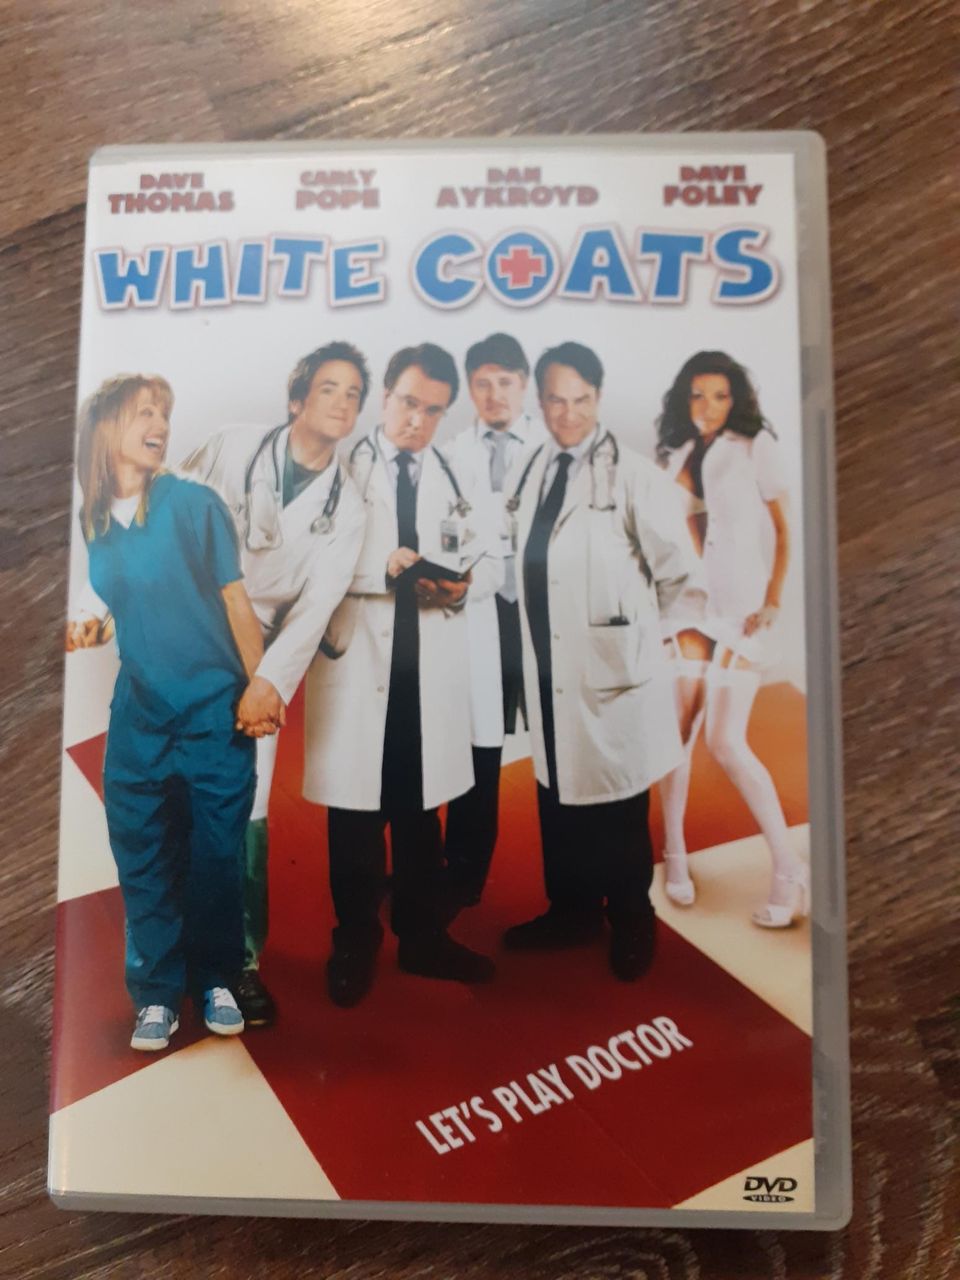 White coats